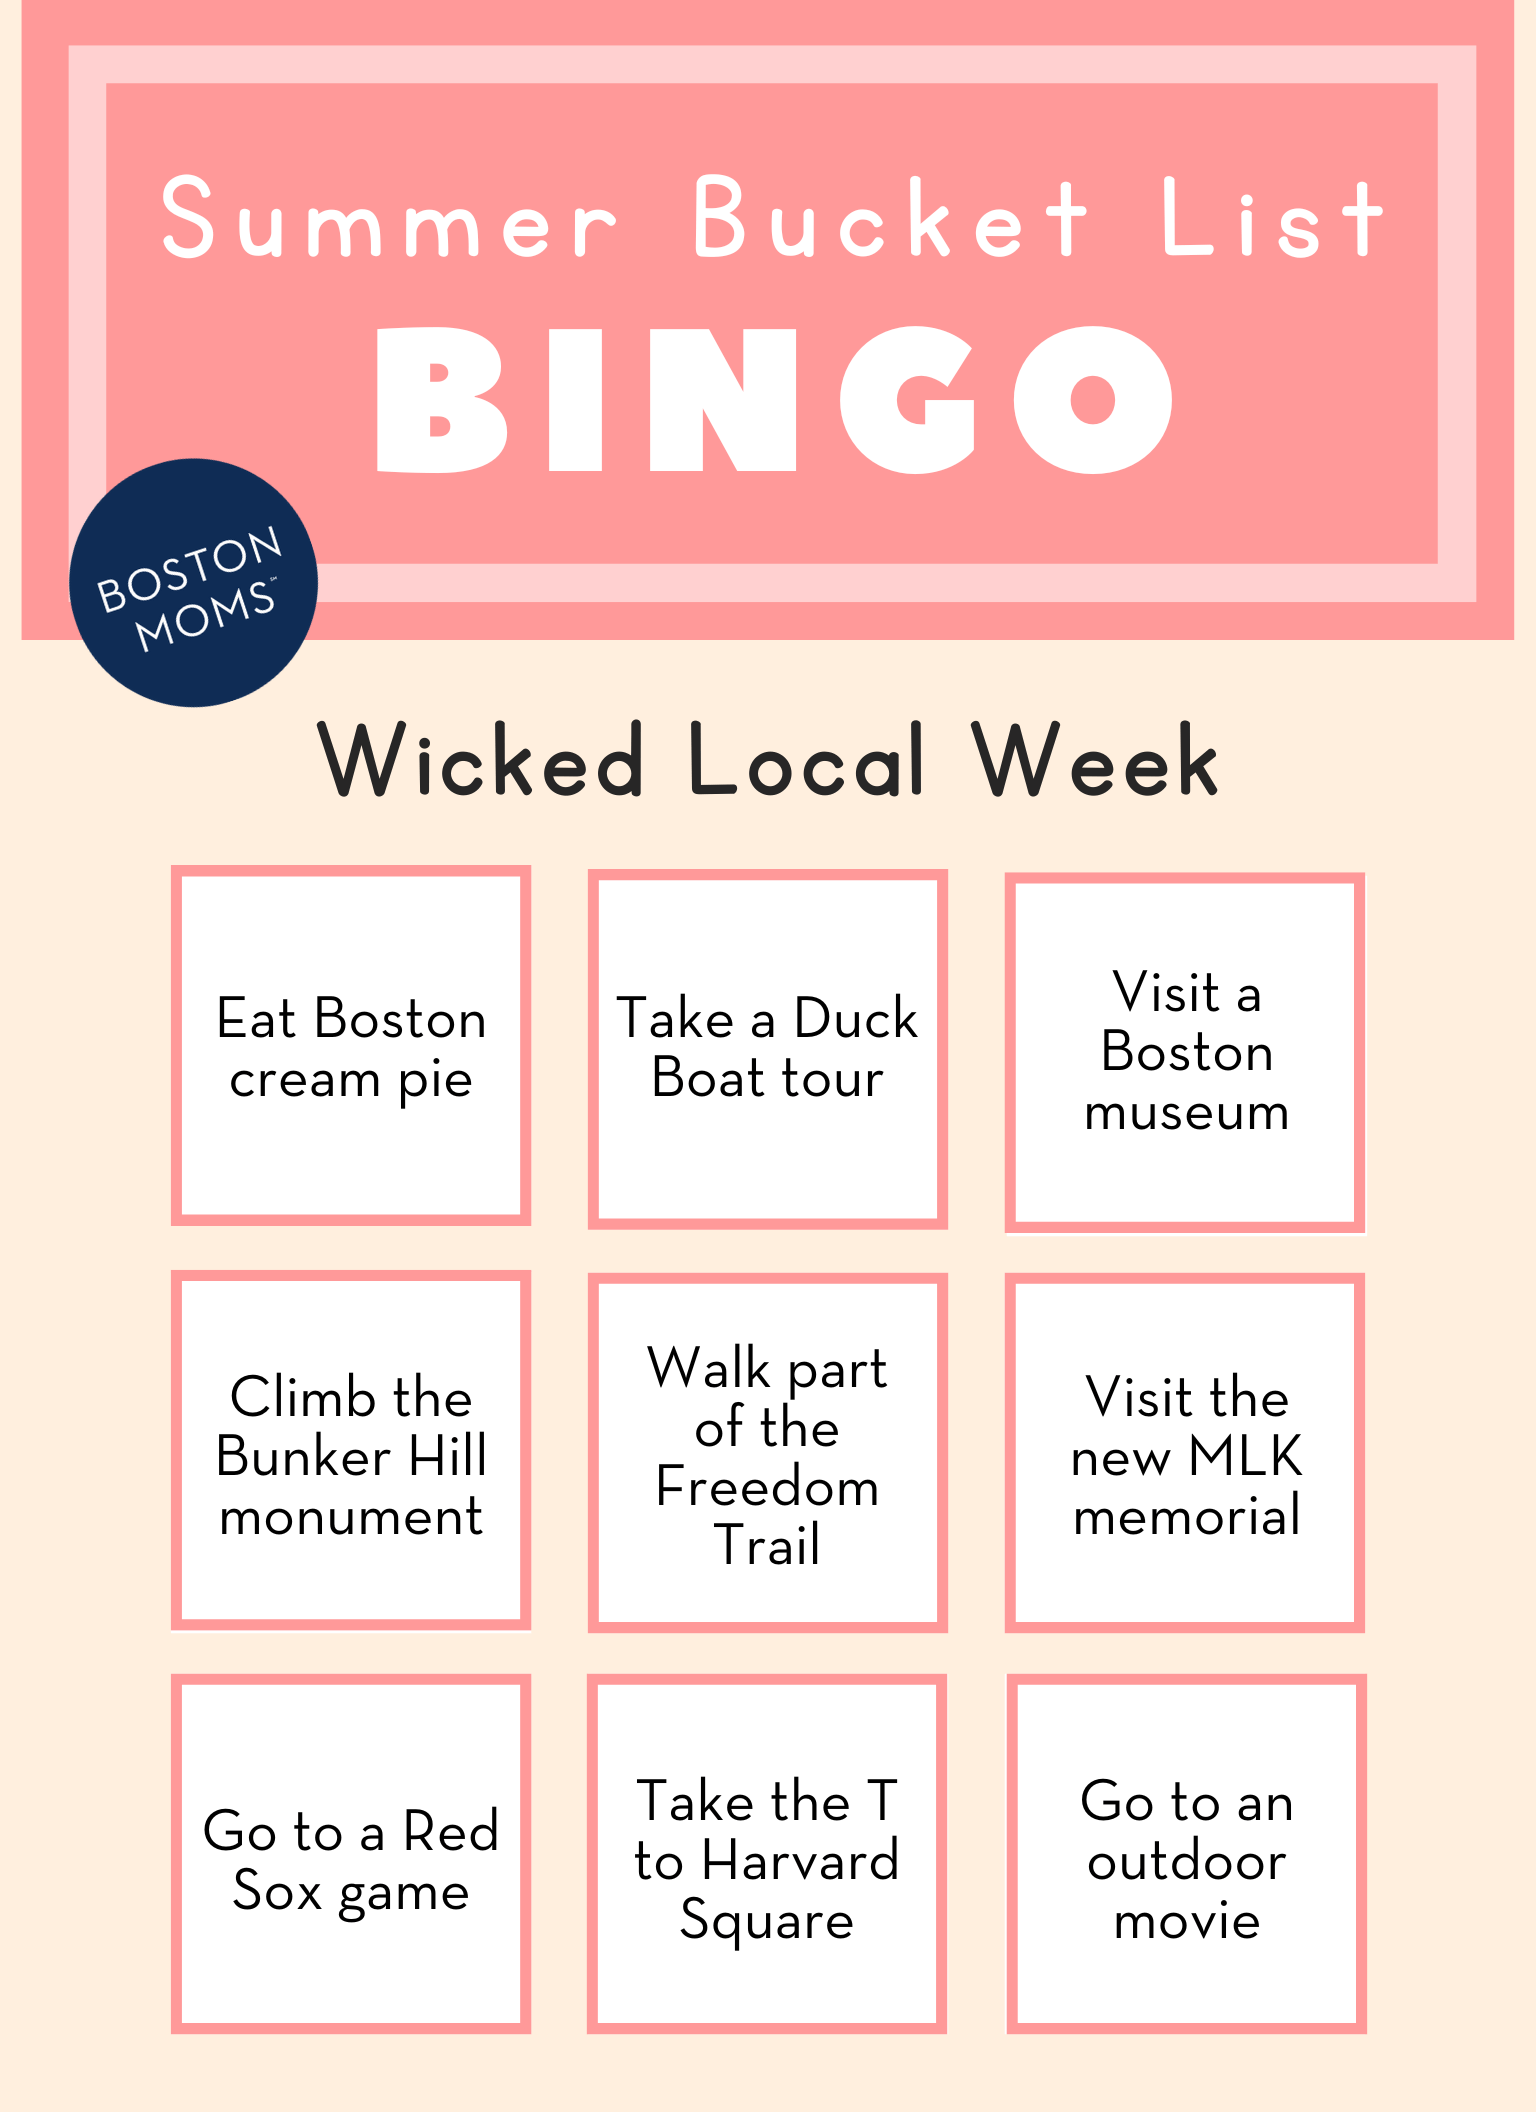 Boston summer bucket list for kids - wicked local week bingo